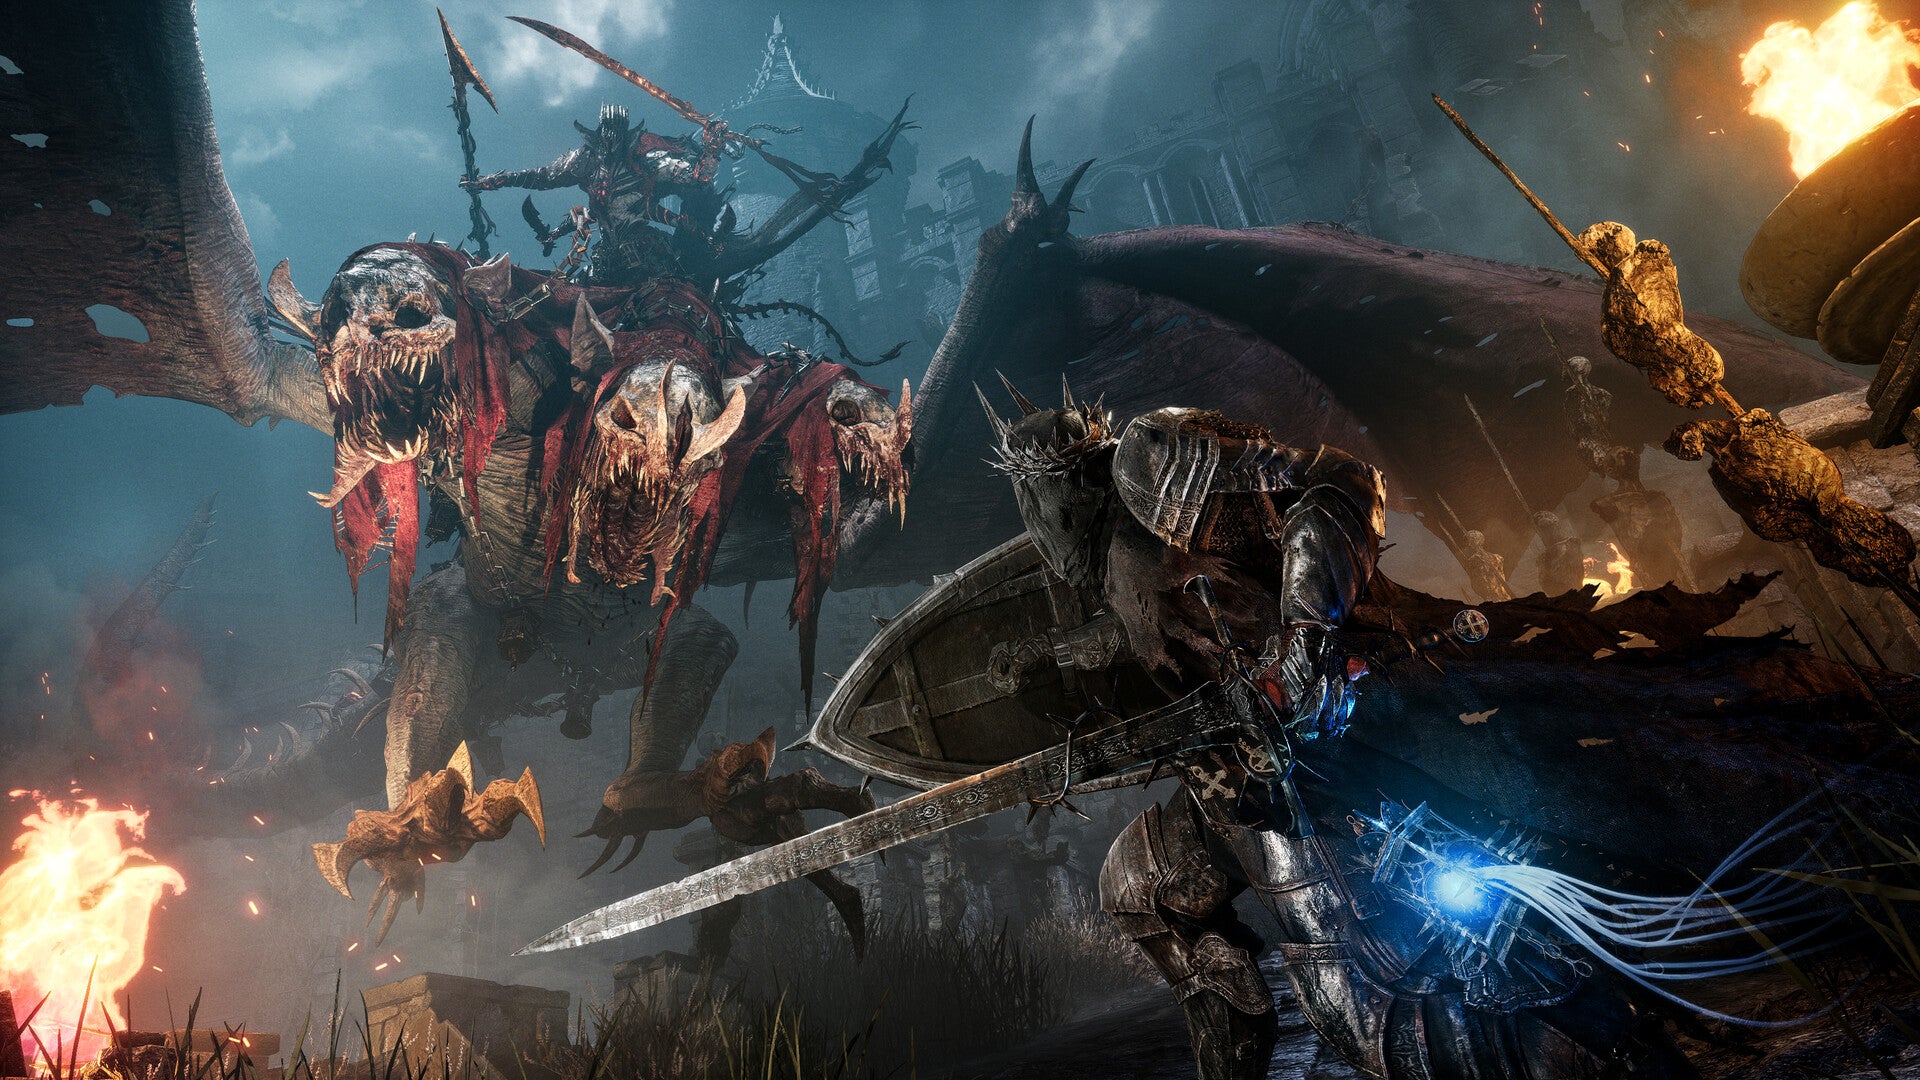 Zapowiedź Lords of the Fallen – Zaatakowany przez skrzydlatą bestię z wieloma czaszkami zamiast głów.